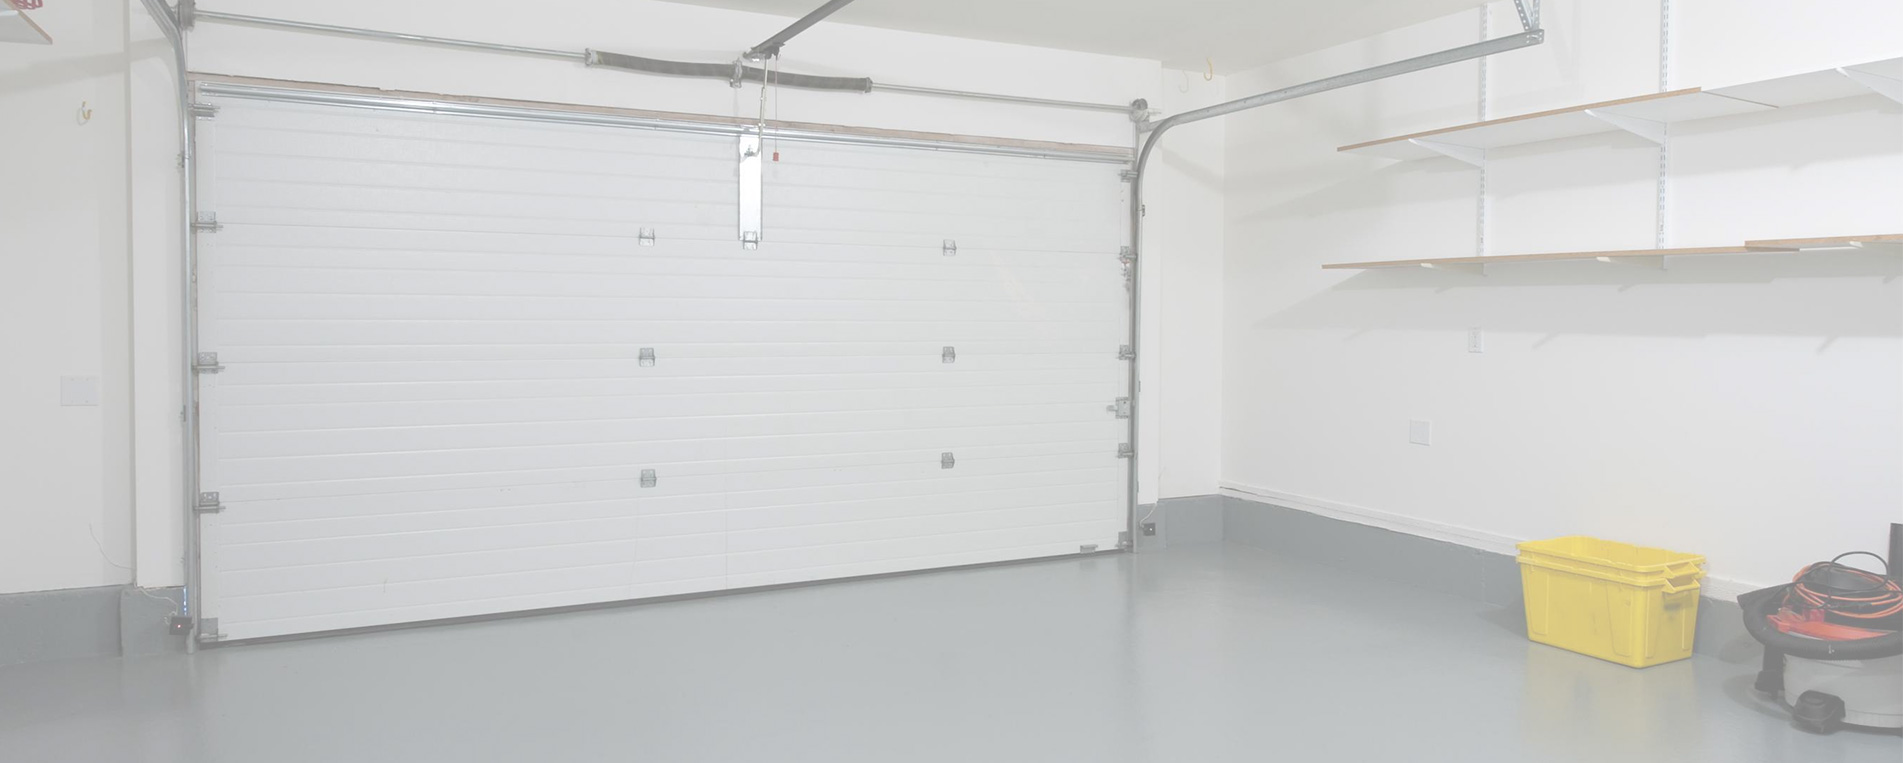 New Garage Door Installation In Rosemount